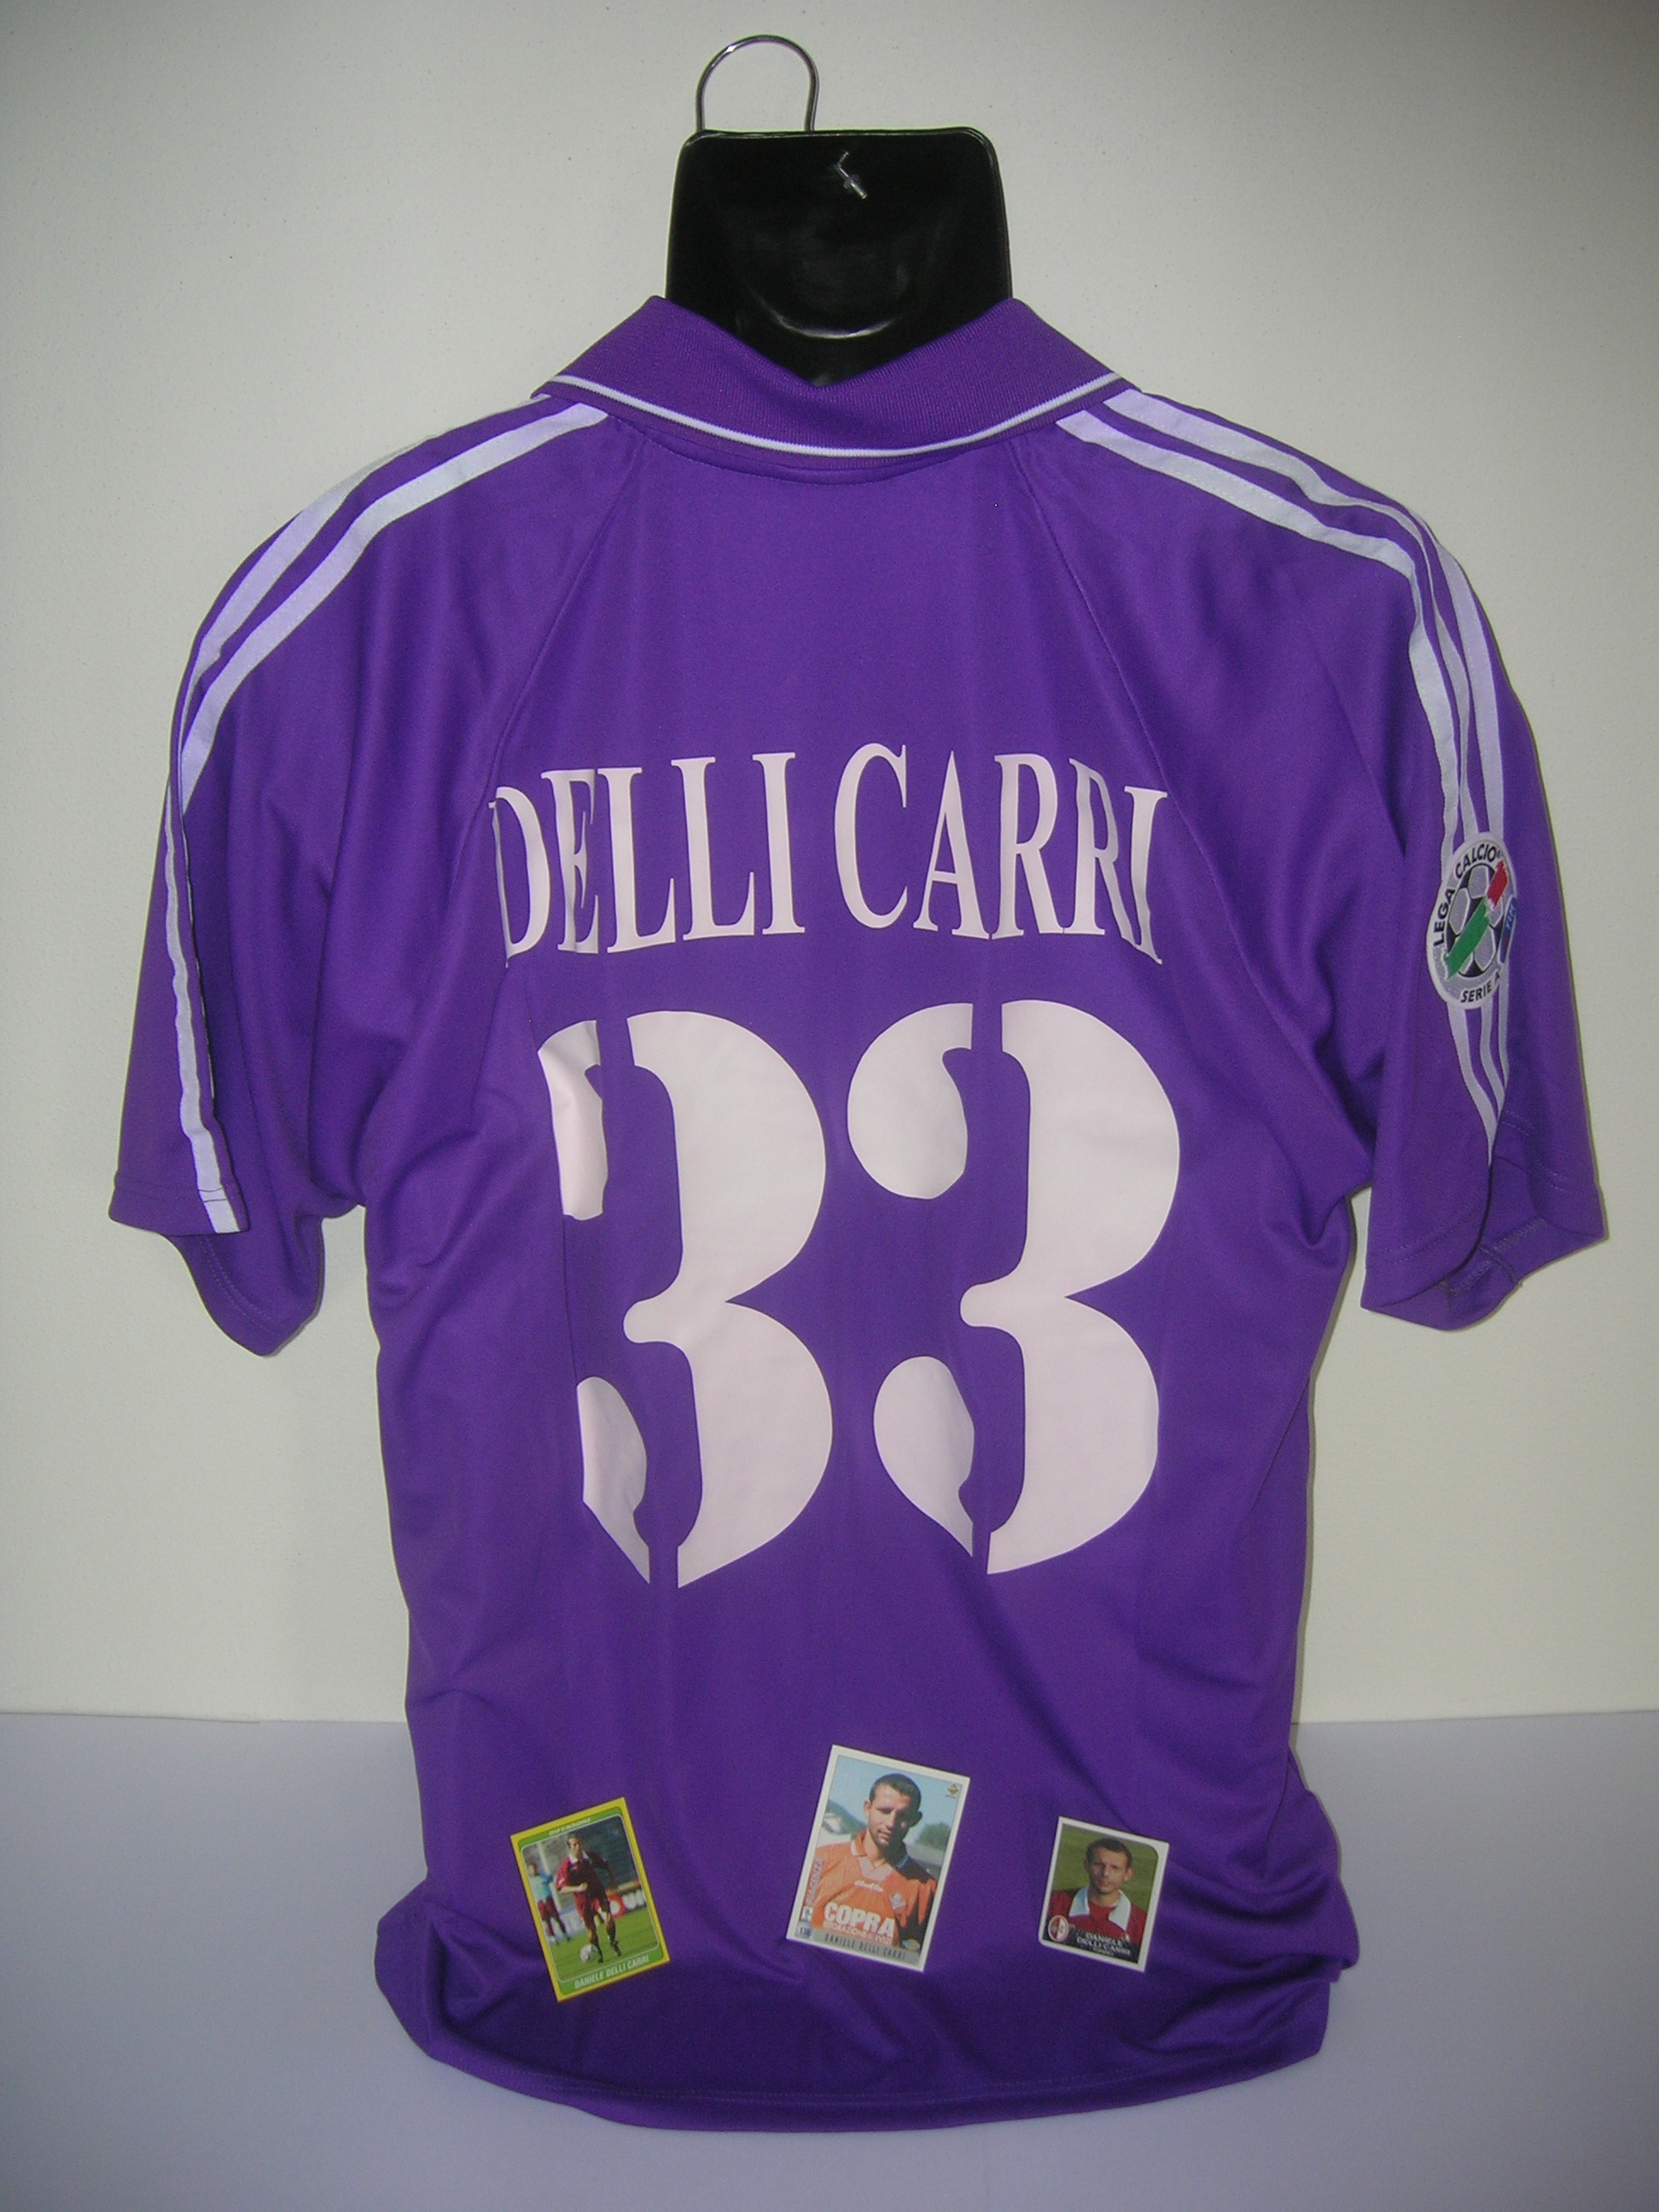 Fiorentina  Delli Carri  33-B